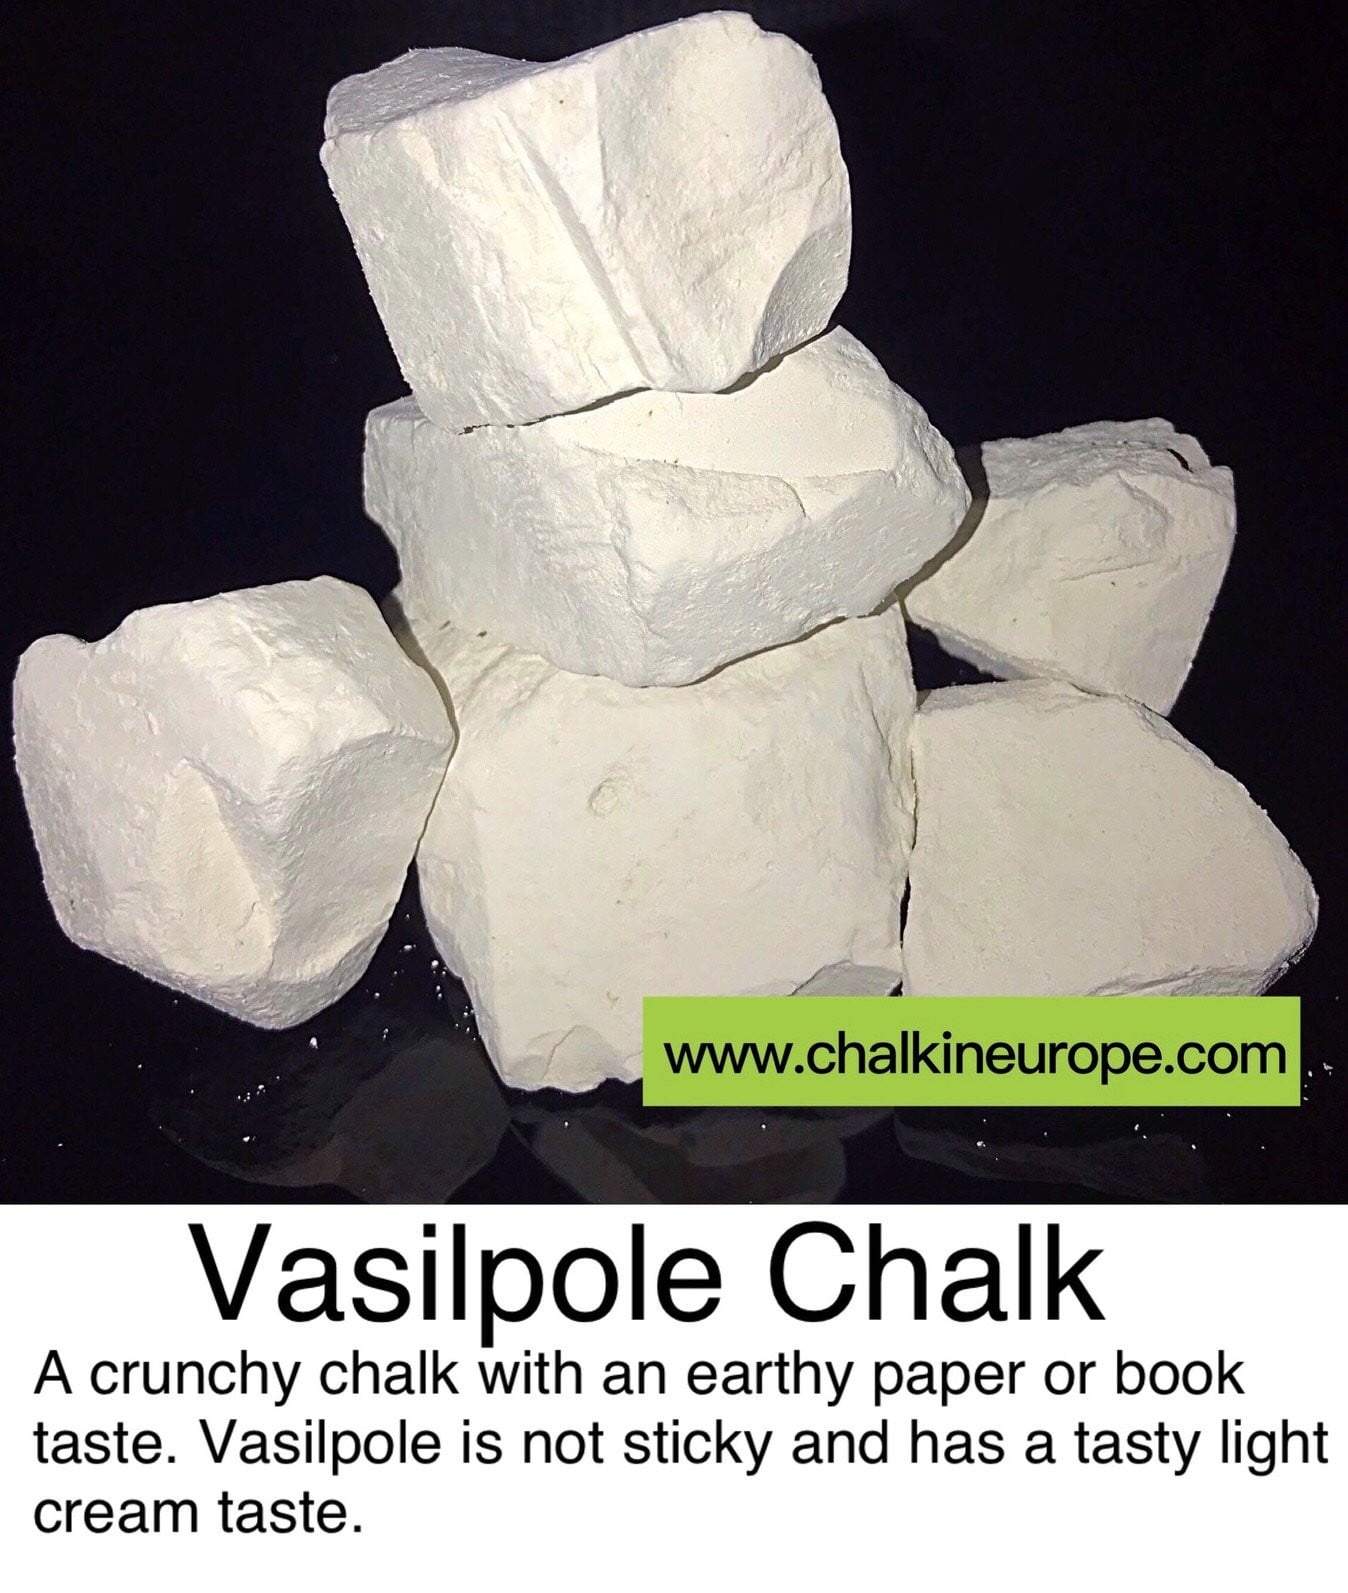 Vasilpole kriit - Chalkineurope